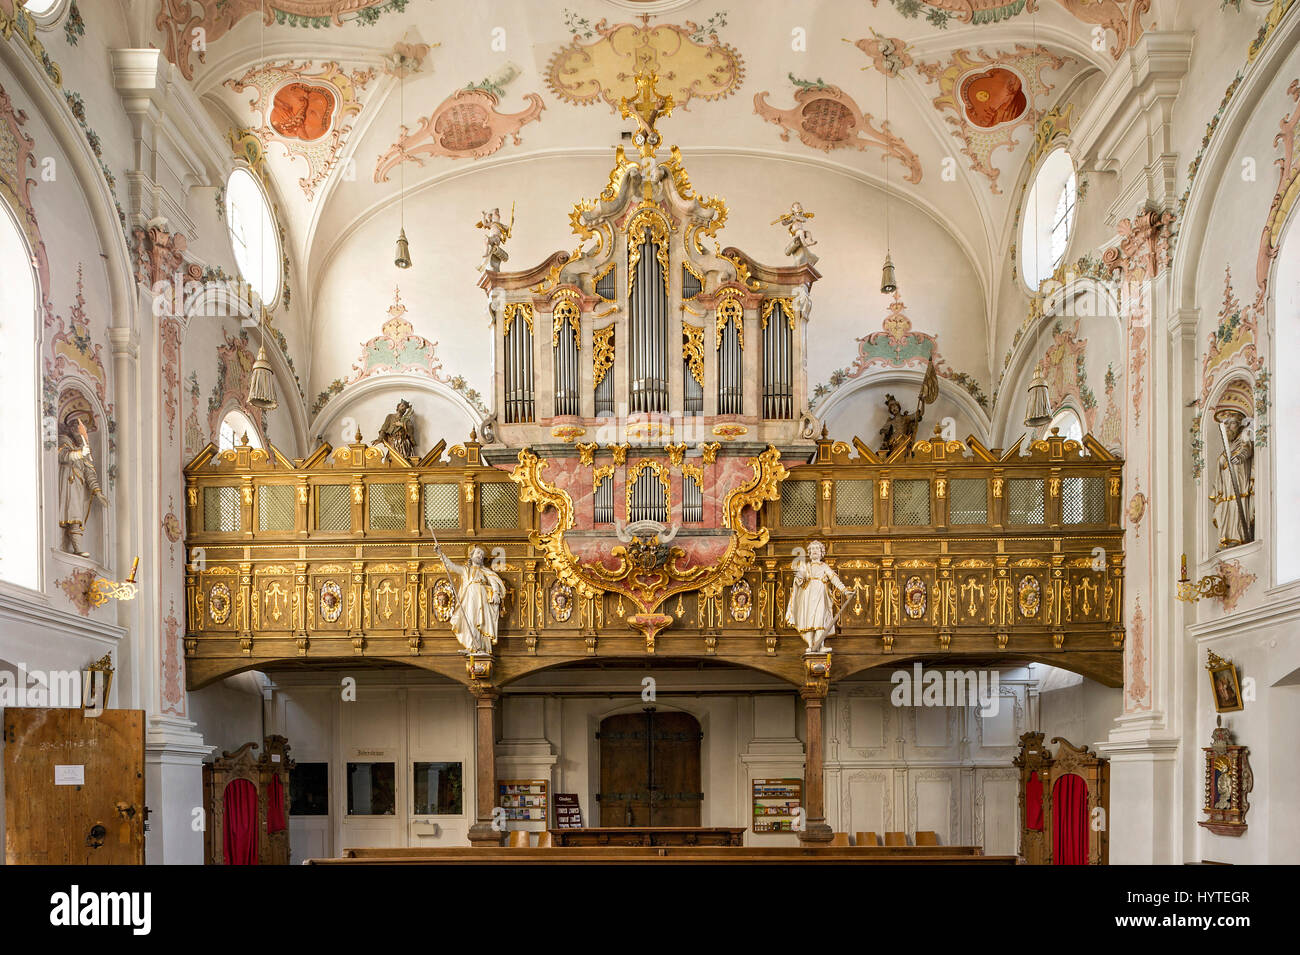 Église de pèlerinage de Maria Hilf, orgue, de l'intérieur rococo, Klosterlechfeld, souabe, Bavière, Allemagne Banque D'Images